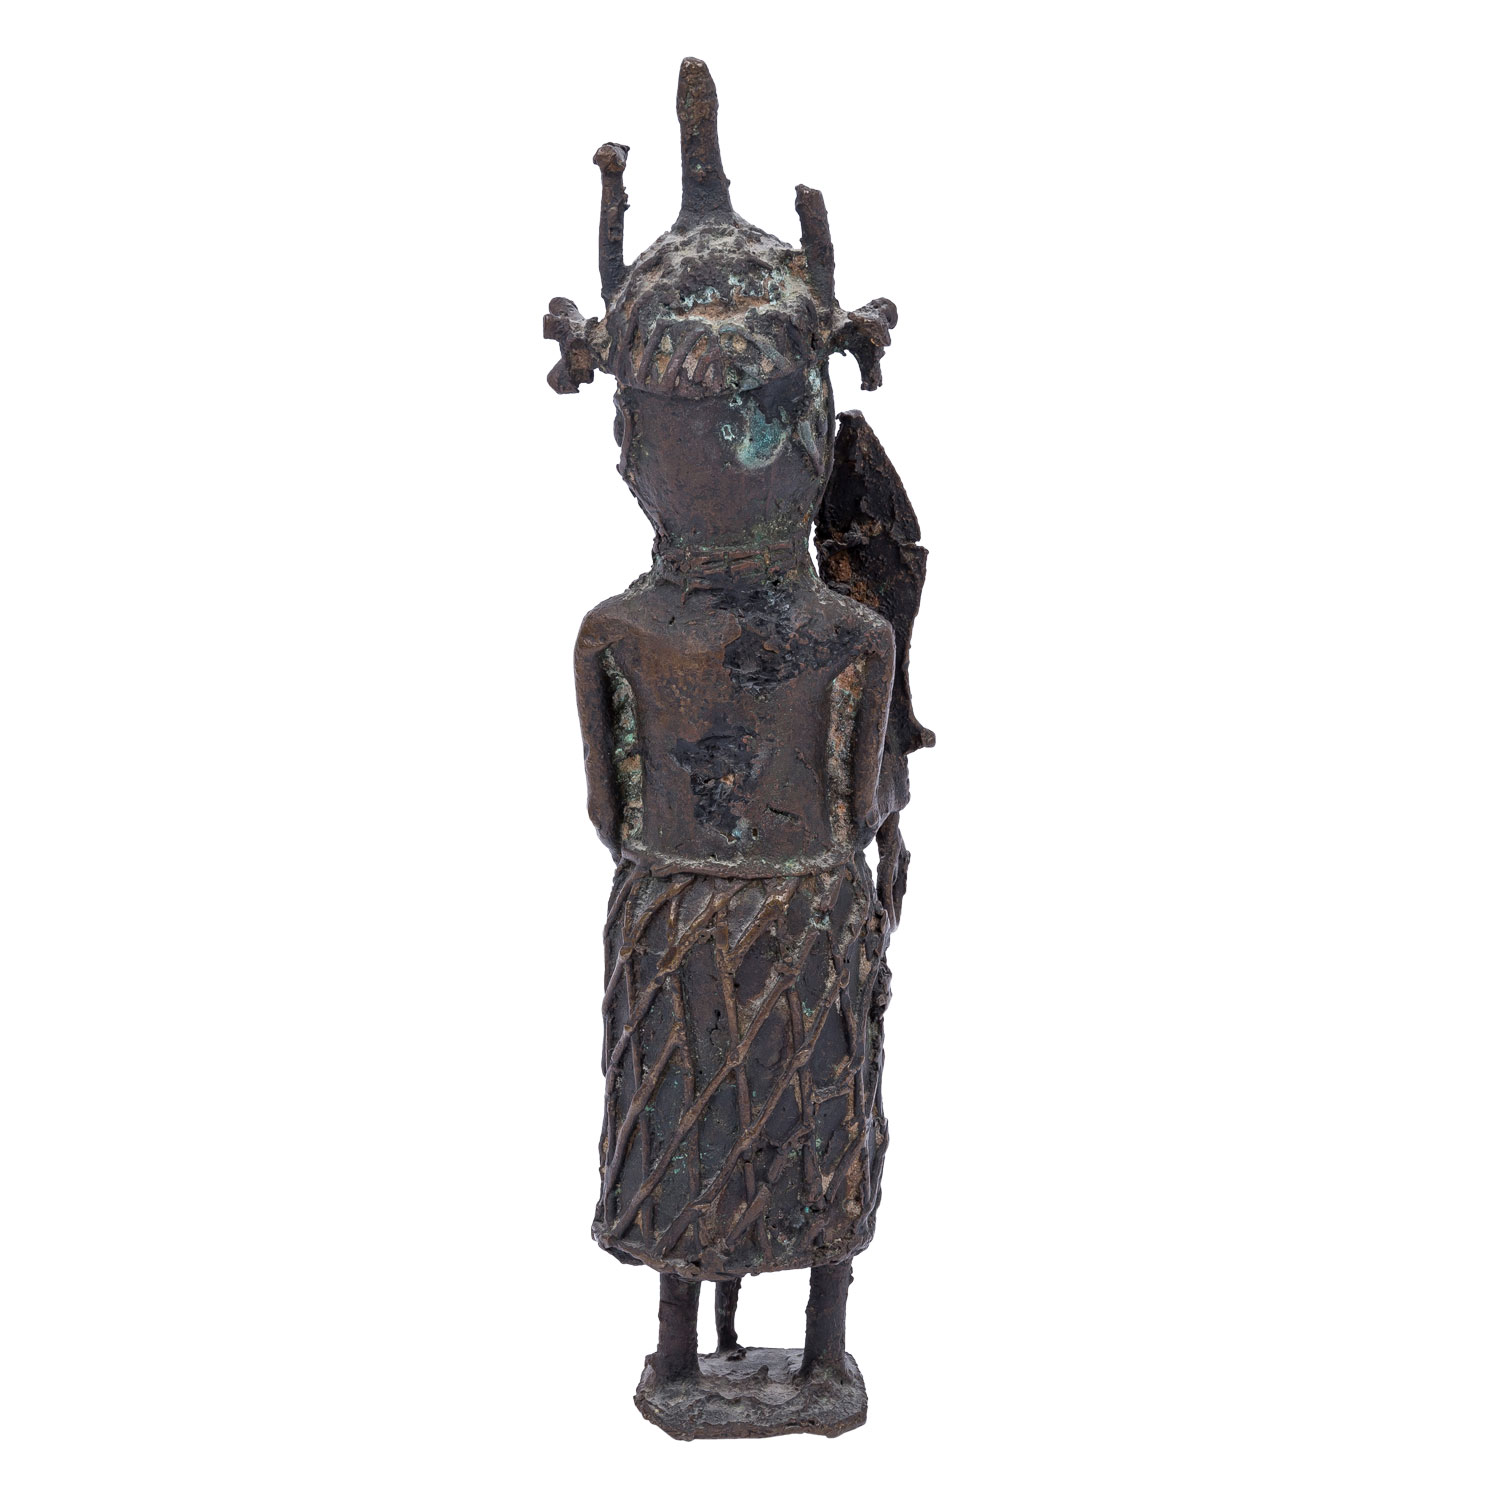 Benin Krieger aus Bronze. NIGERIA/AFRIKA, 19. Jh. oder früher. - Image 3 of 6